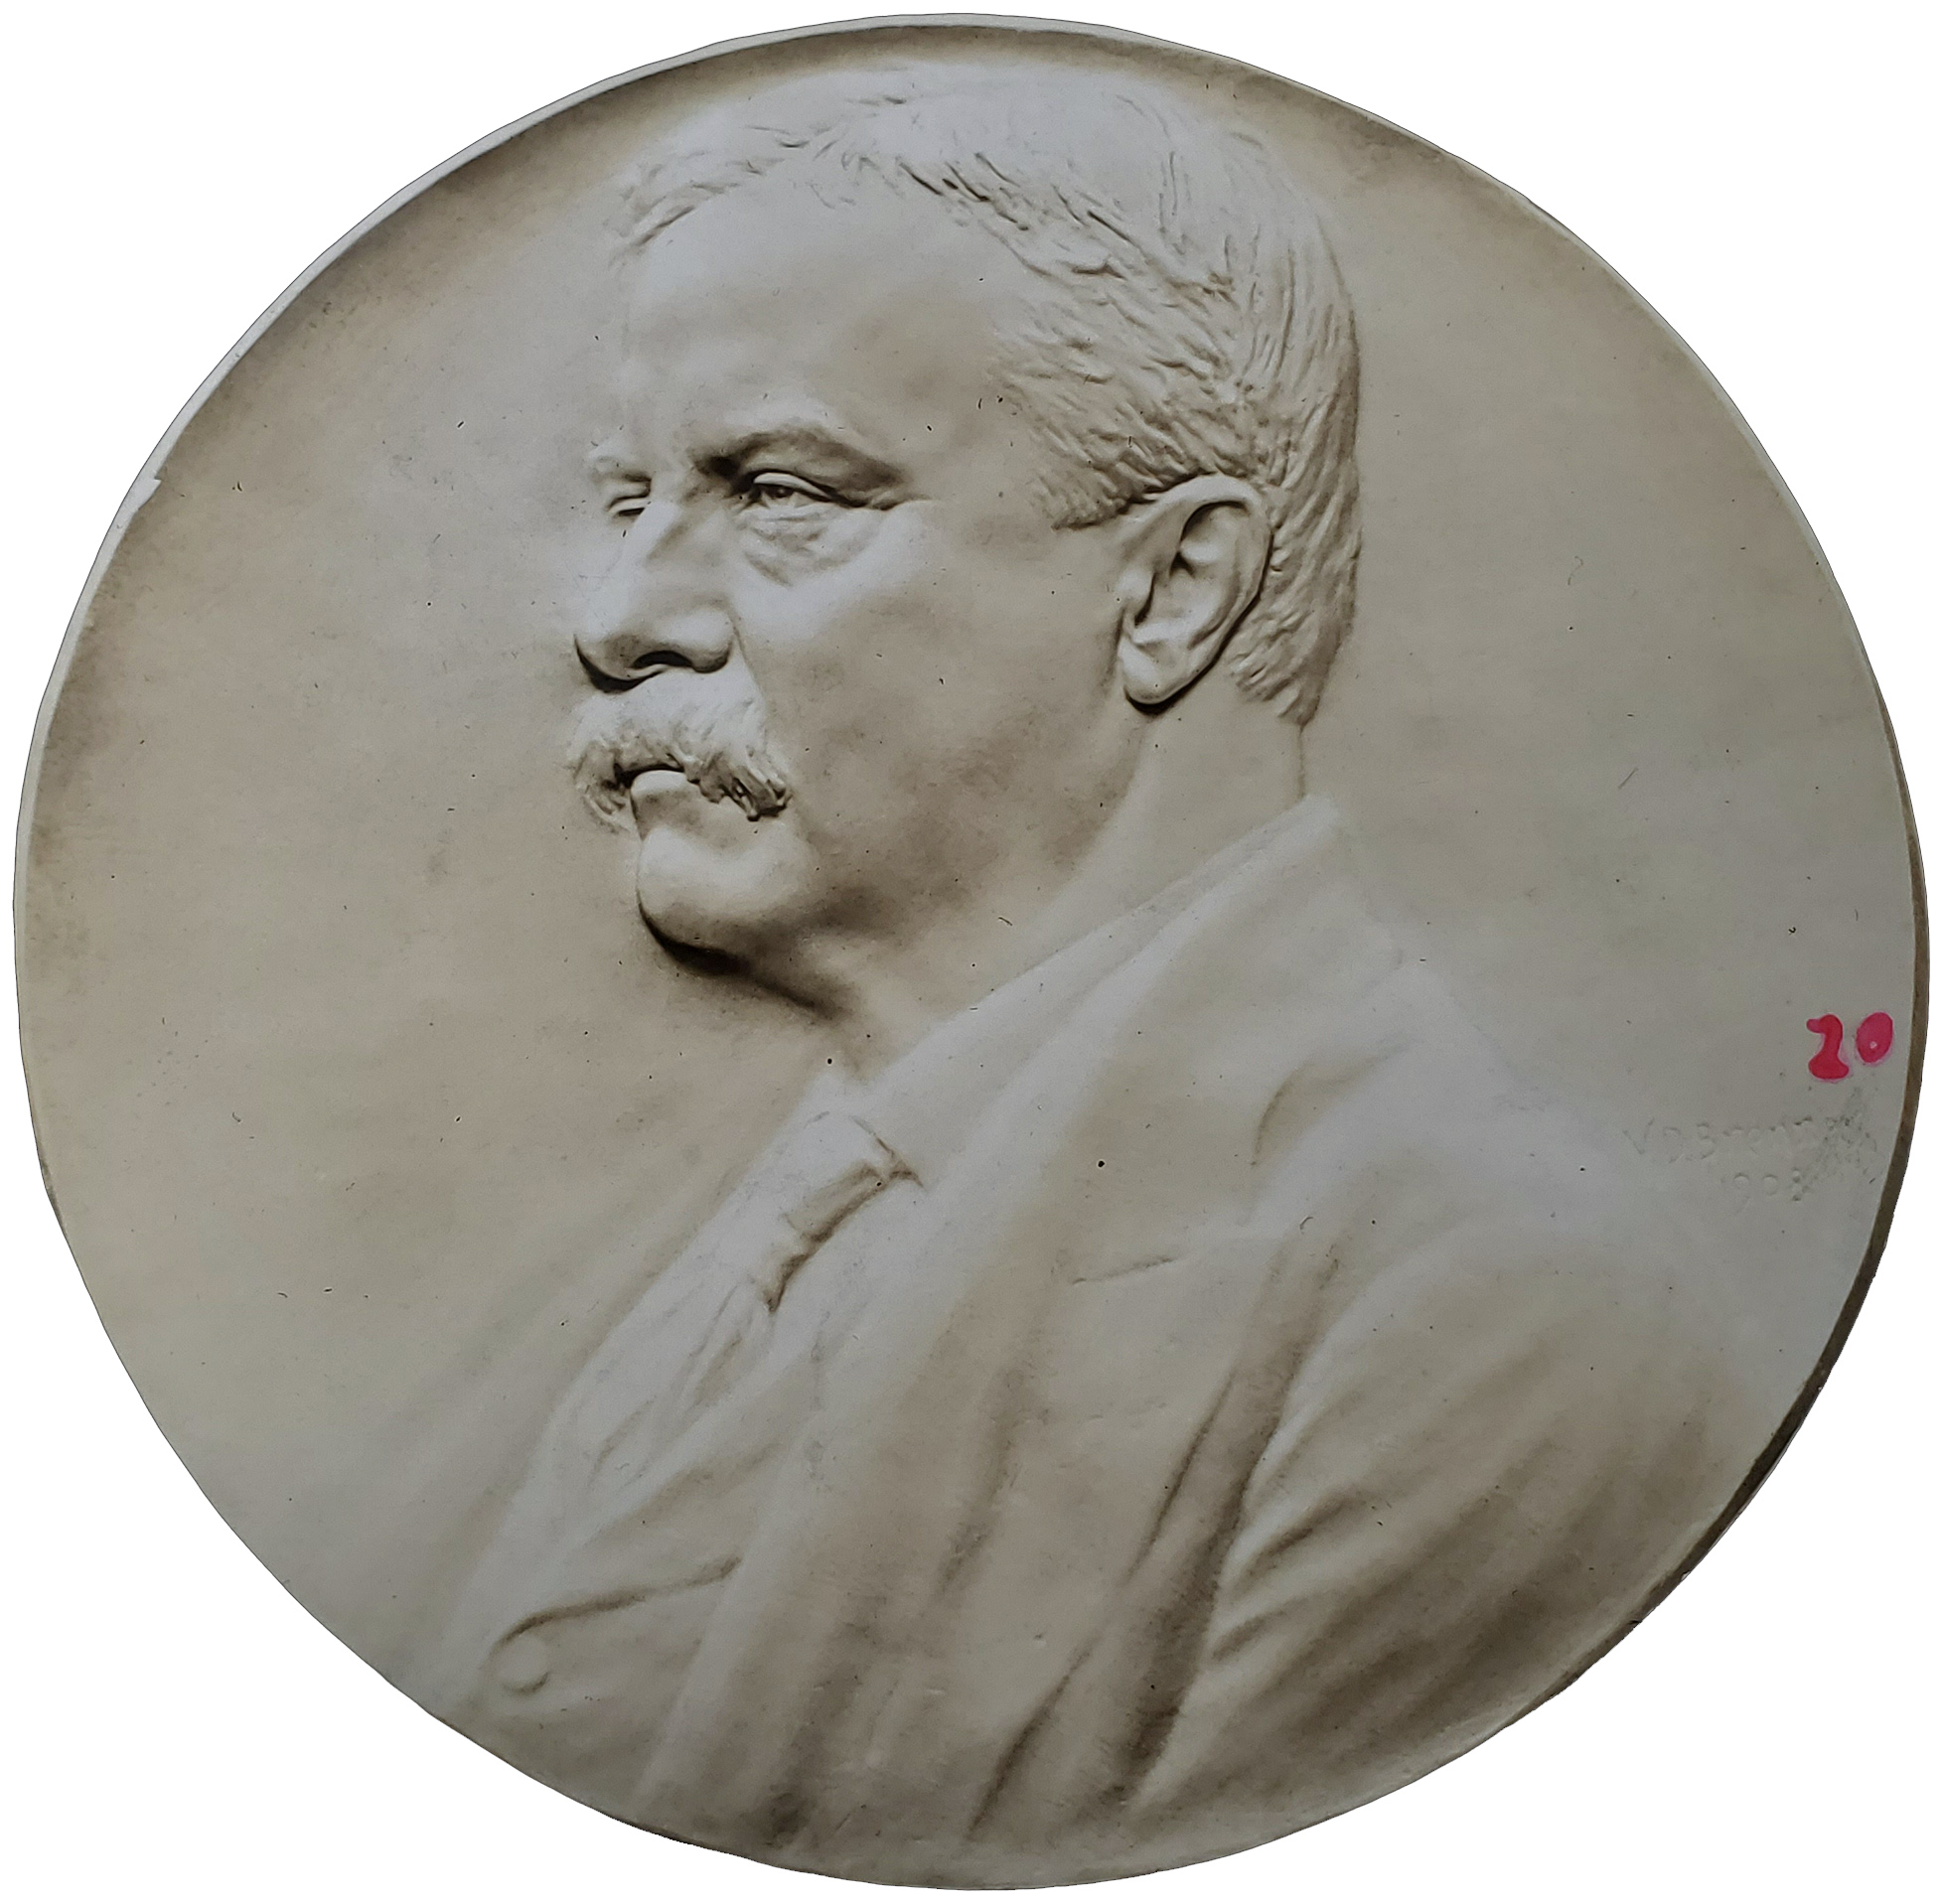 Hahlo-137, President Roosevelt medallion